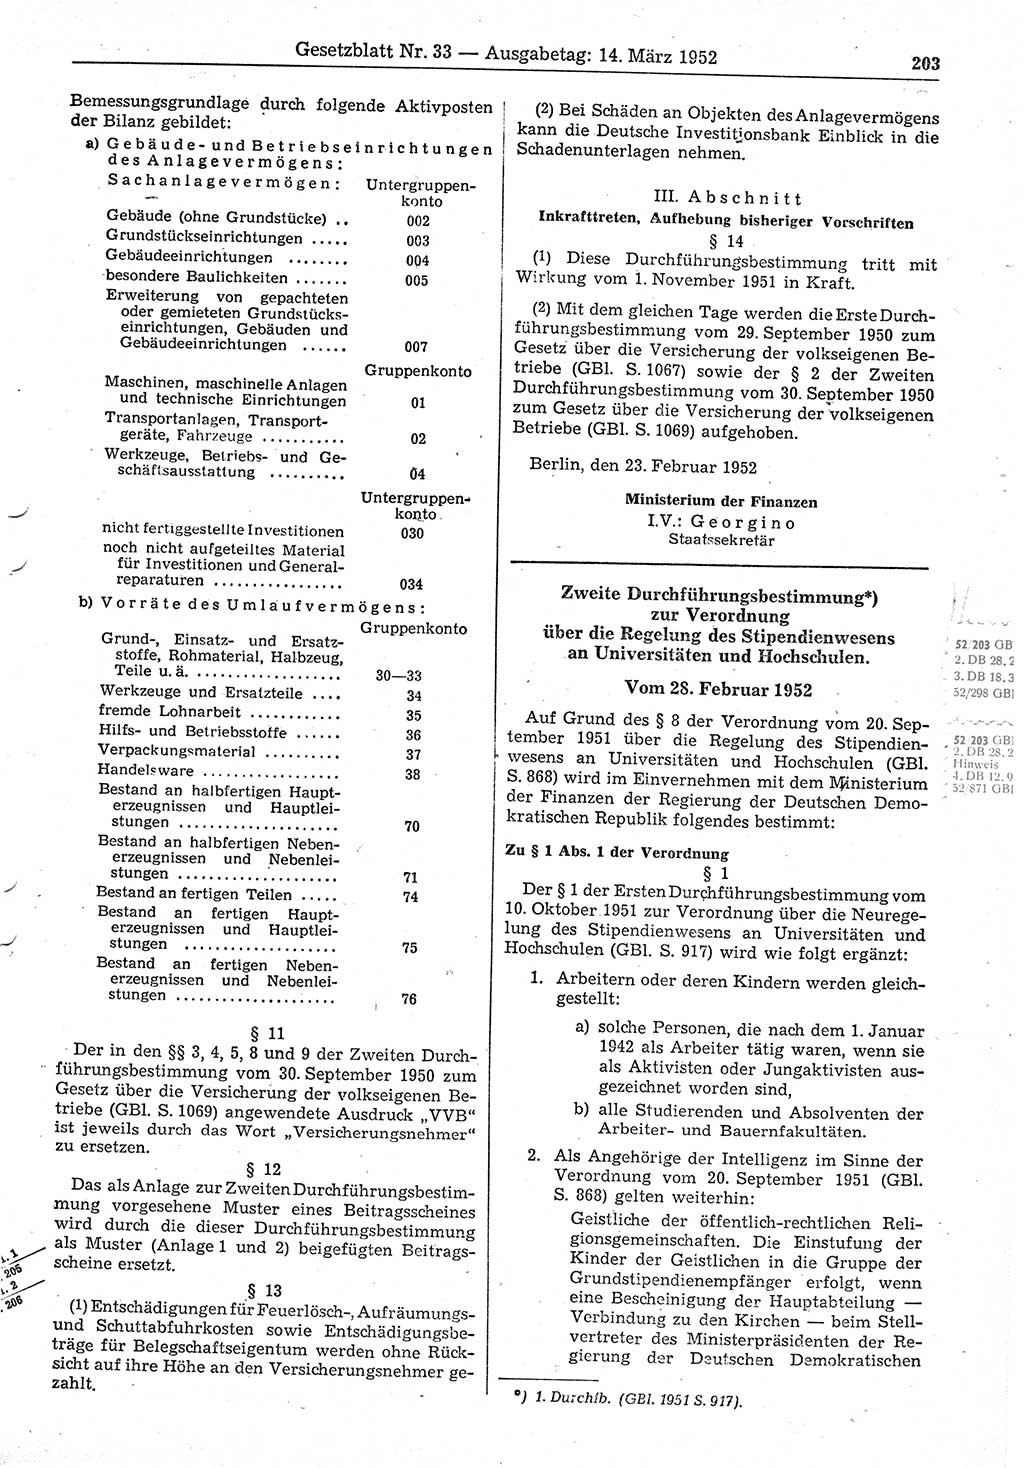 Gesetzblatt (GBl.) der Deutschen Demokratischen Republik (DDR) 1952, Seite 203 (GBl. DDR 1952, S. 203)